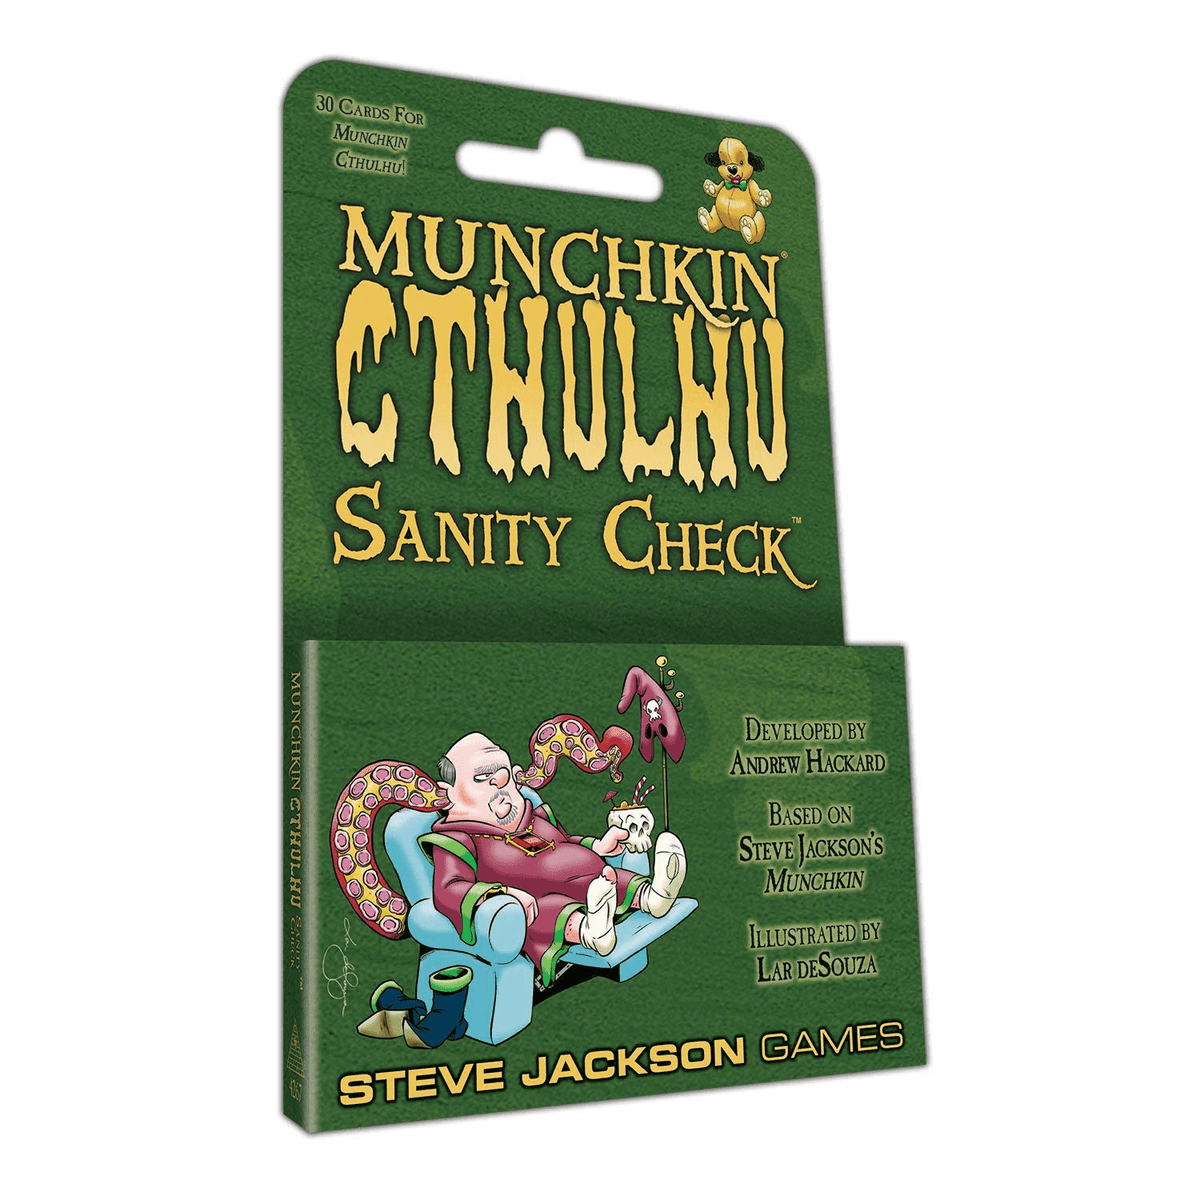 Munchkin Cthulhu: Sanity Check